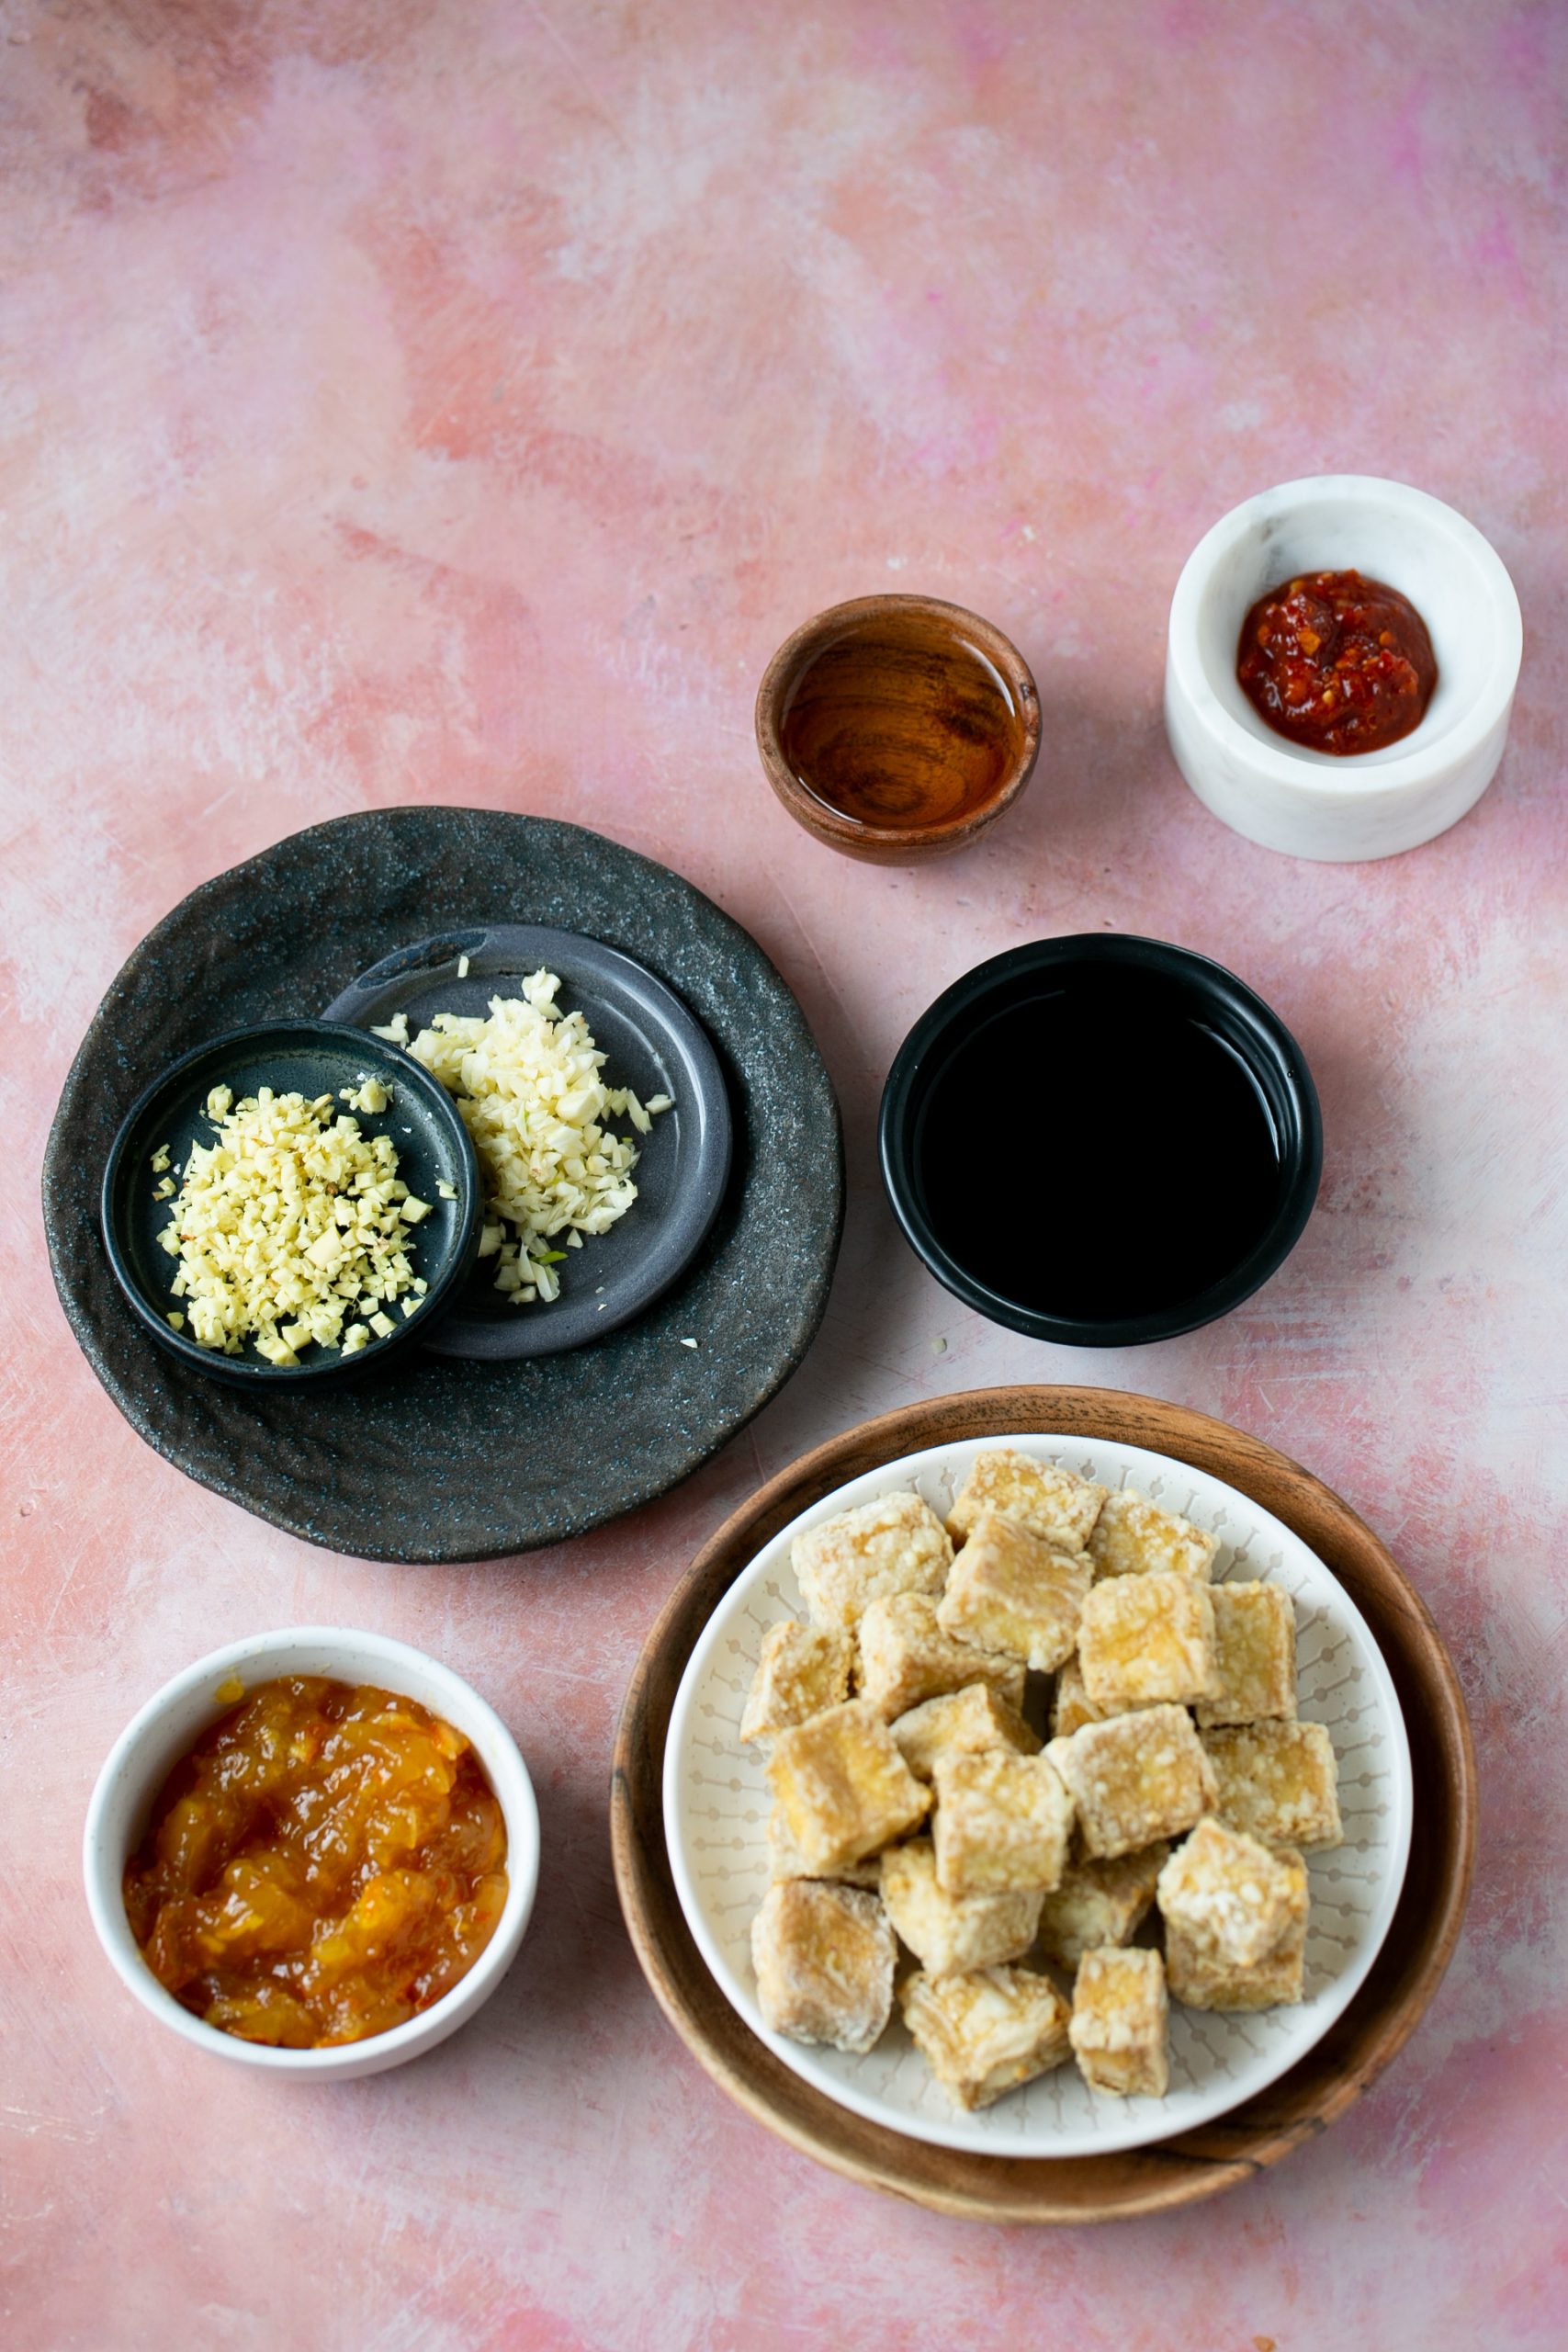         Descripción: Un plato de tofu crujiente sobre un fondo rosa con salsas picantes de naranja y condimentos.